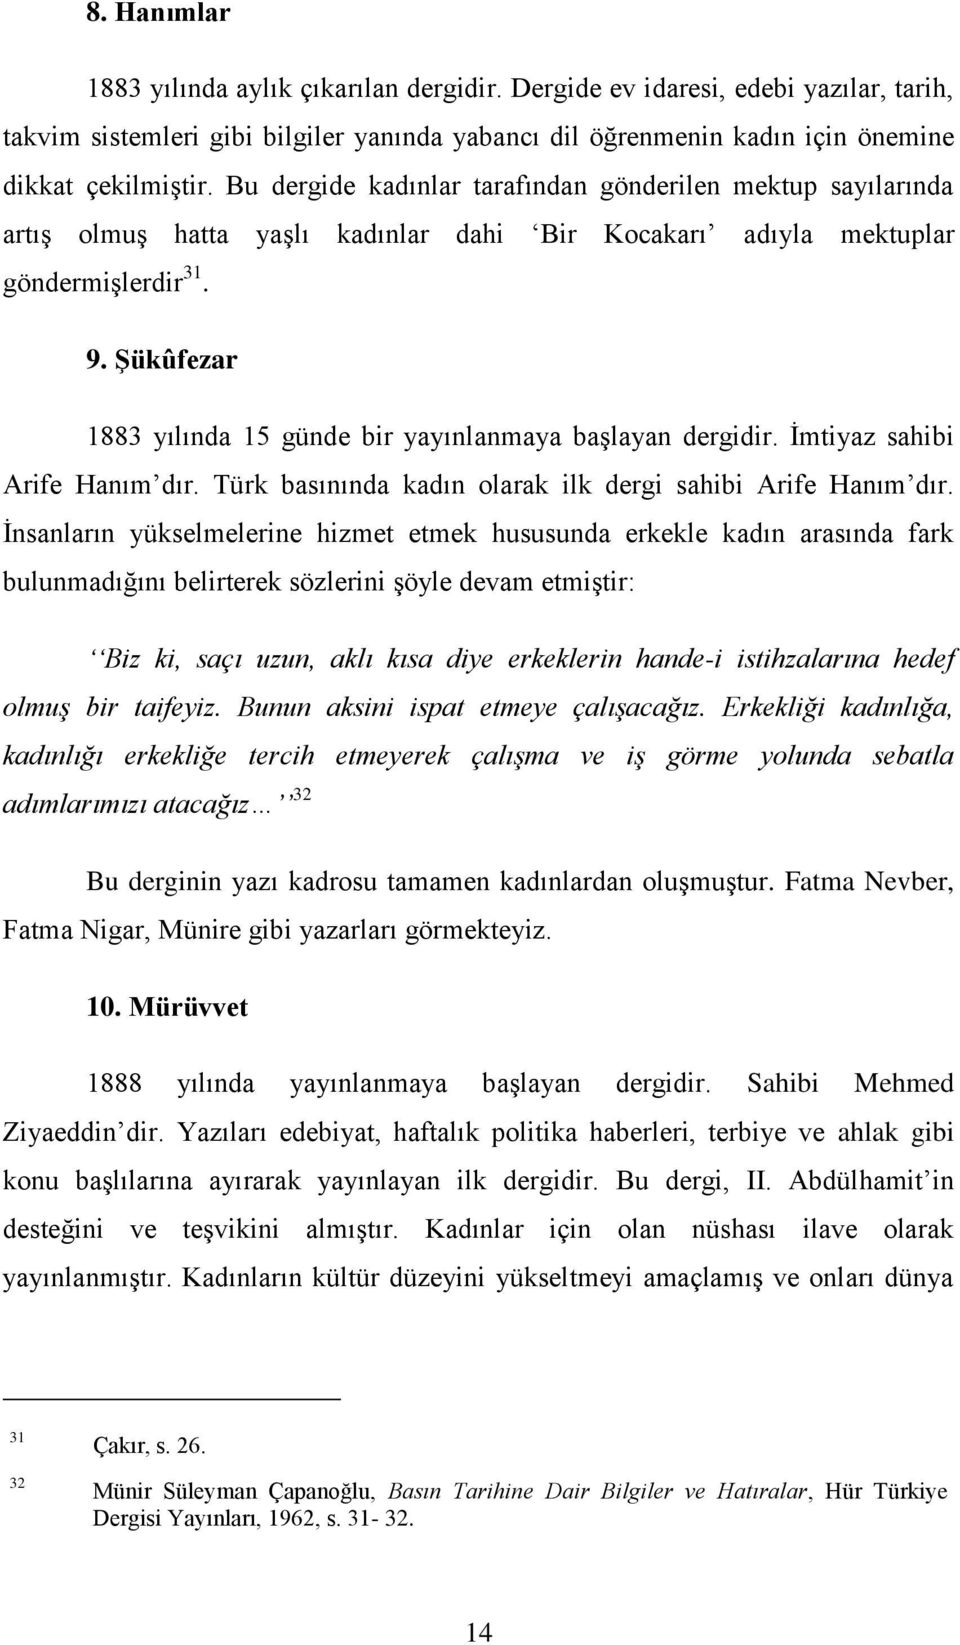 ġükûfezar 1883 yılında 15 günde bir yayınlanmaya başlayan dergidir. İmtiyaz sahibi Arife Hanım dır. Türk basınında kadın olarak ilk dergi sahibi Arife Hanım dır.